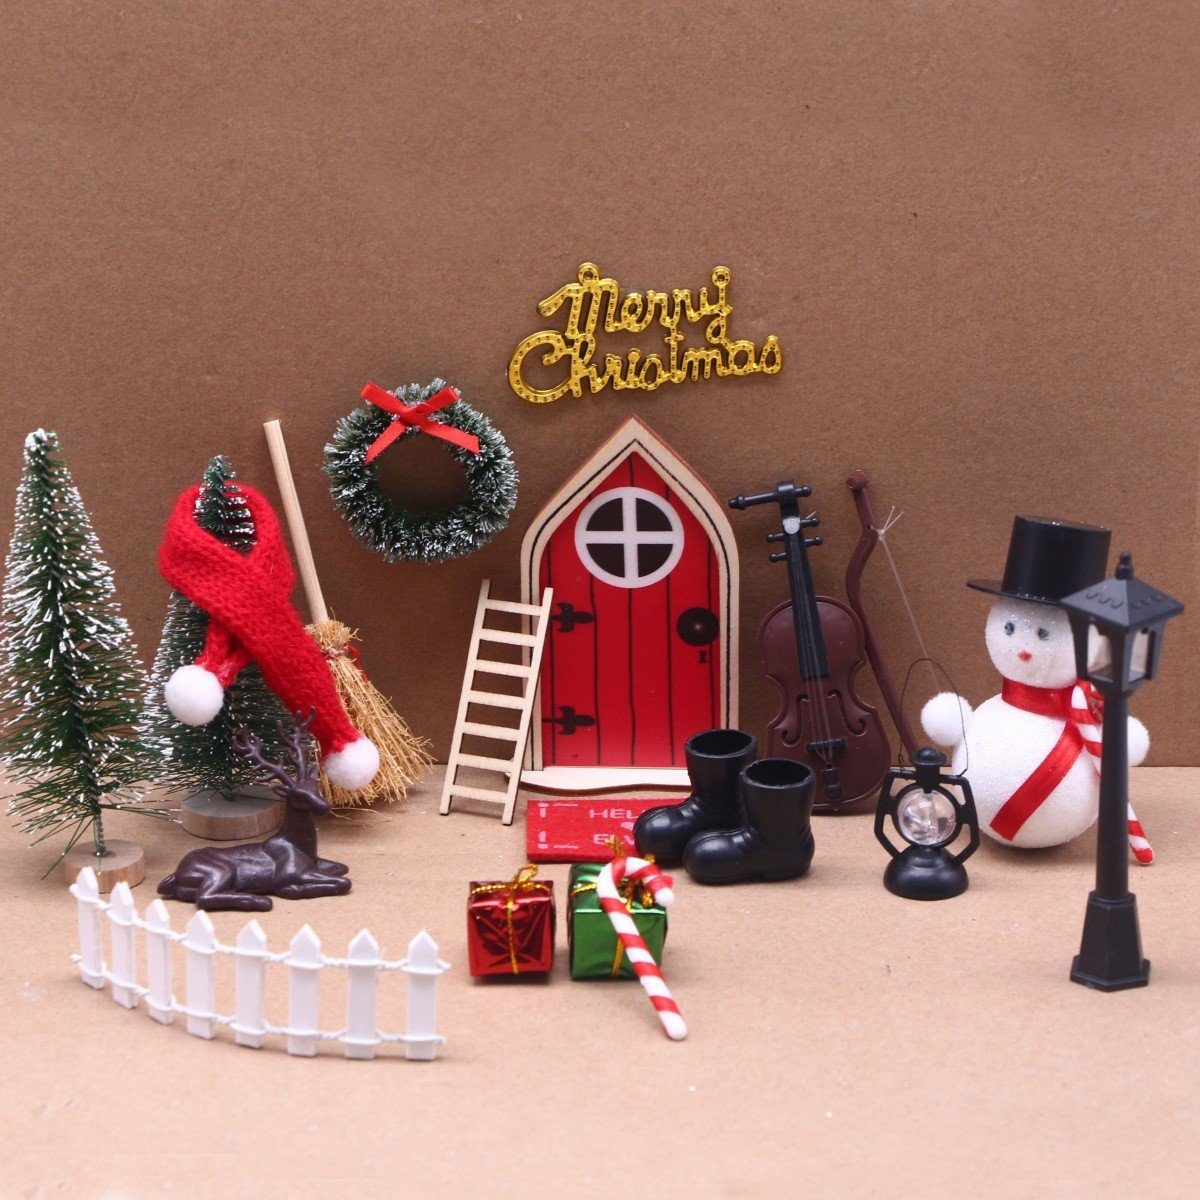 XDeer Kreativset Wichteltür Set,Wichteltür Zubehör Weihnachten,Weihnachtsdeko Elfentür, Miniatur WichtelZubehör,Kinderzimmer Dekor Geschenk für Weihnachten Rot